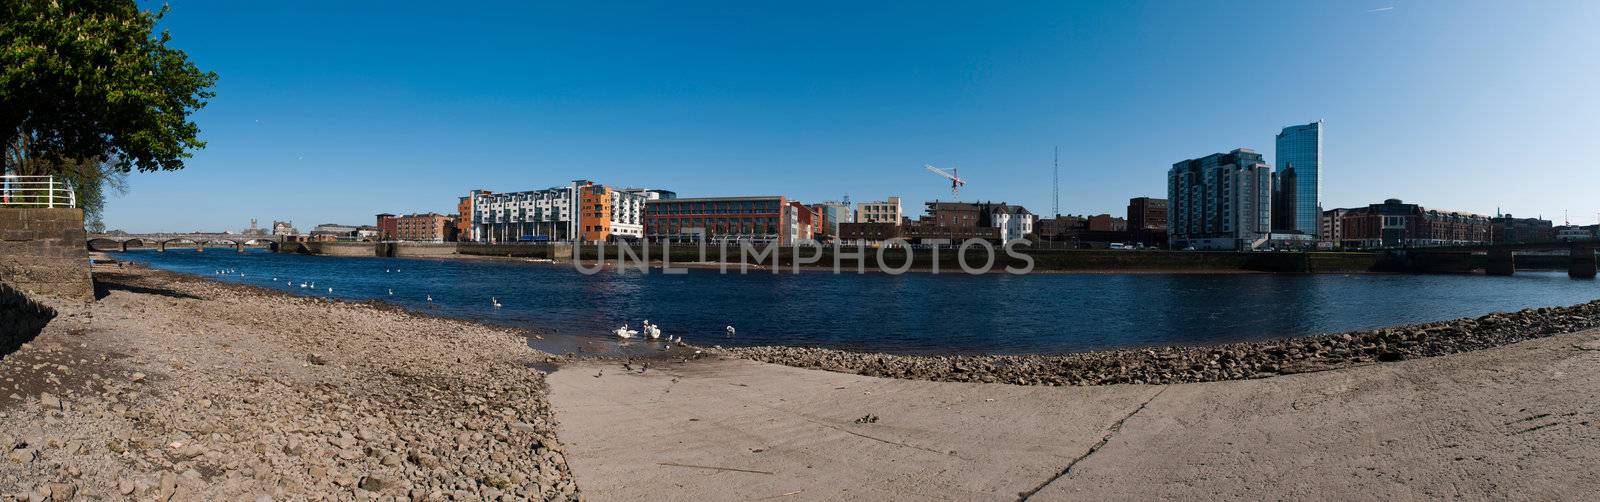 Limerick panorama by luissantos84